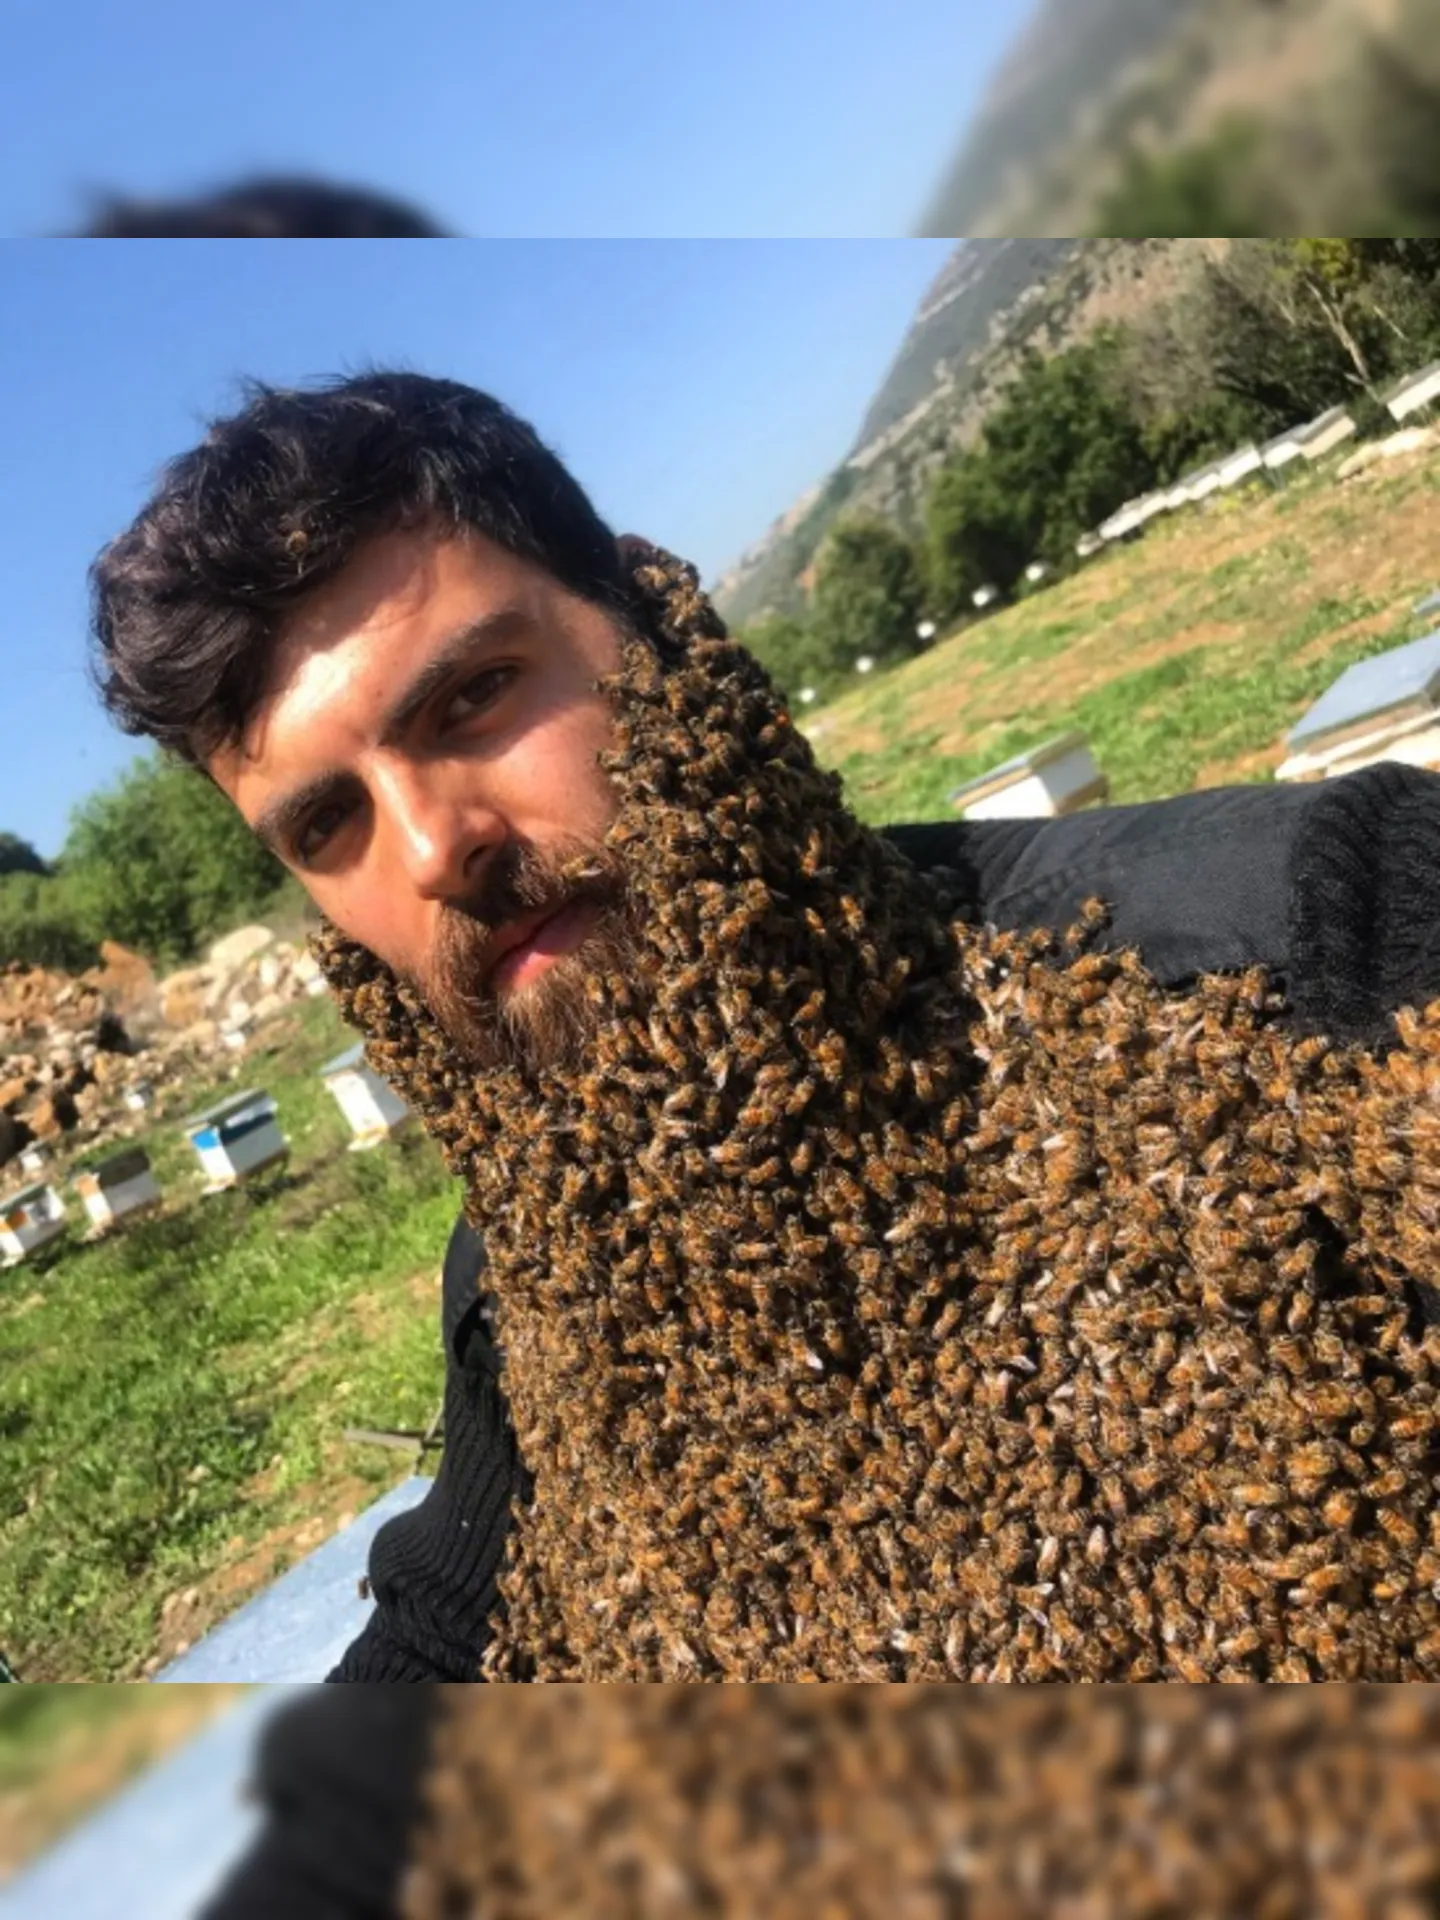 Johny Abou Rjeily com a barba coberta de abelhas